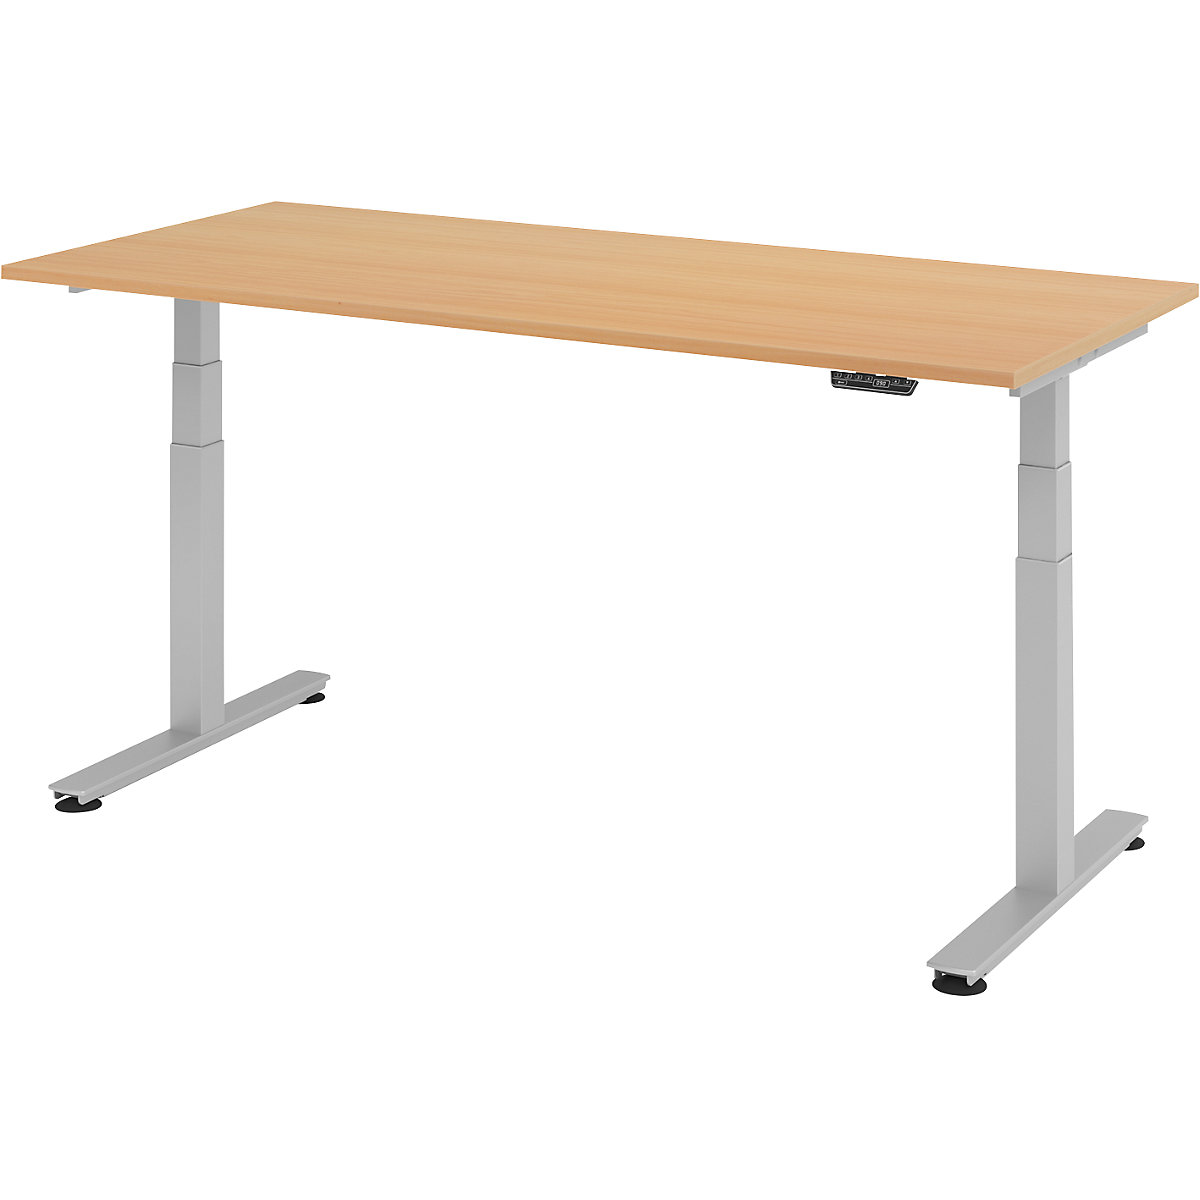 Psací stůl pro práci vestoje, s elektrickým přestavováním výšky UPLINER-2.0, podstavec s nohami ve tvaru T, šířka 1200 mm, bukový dekor-15